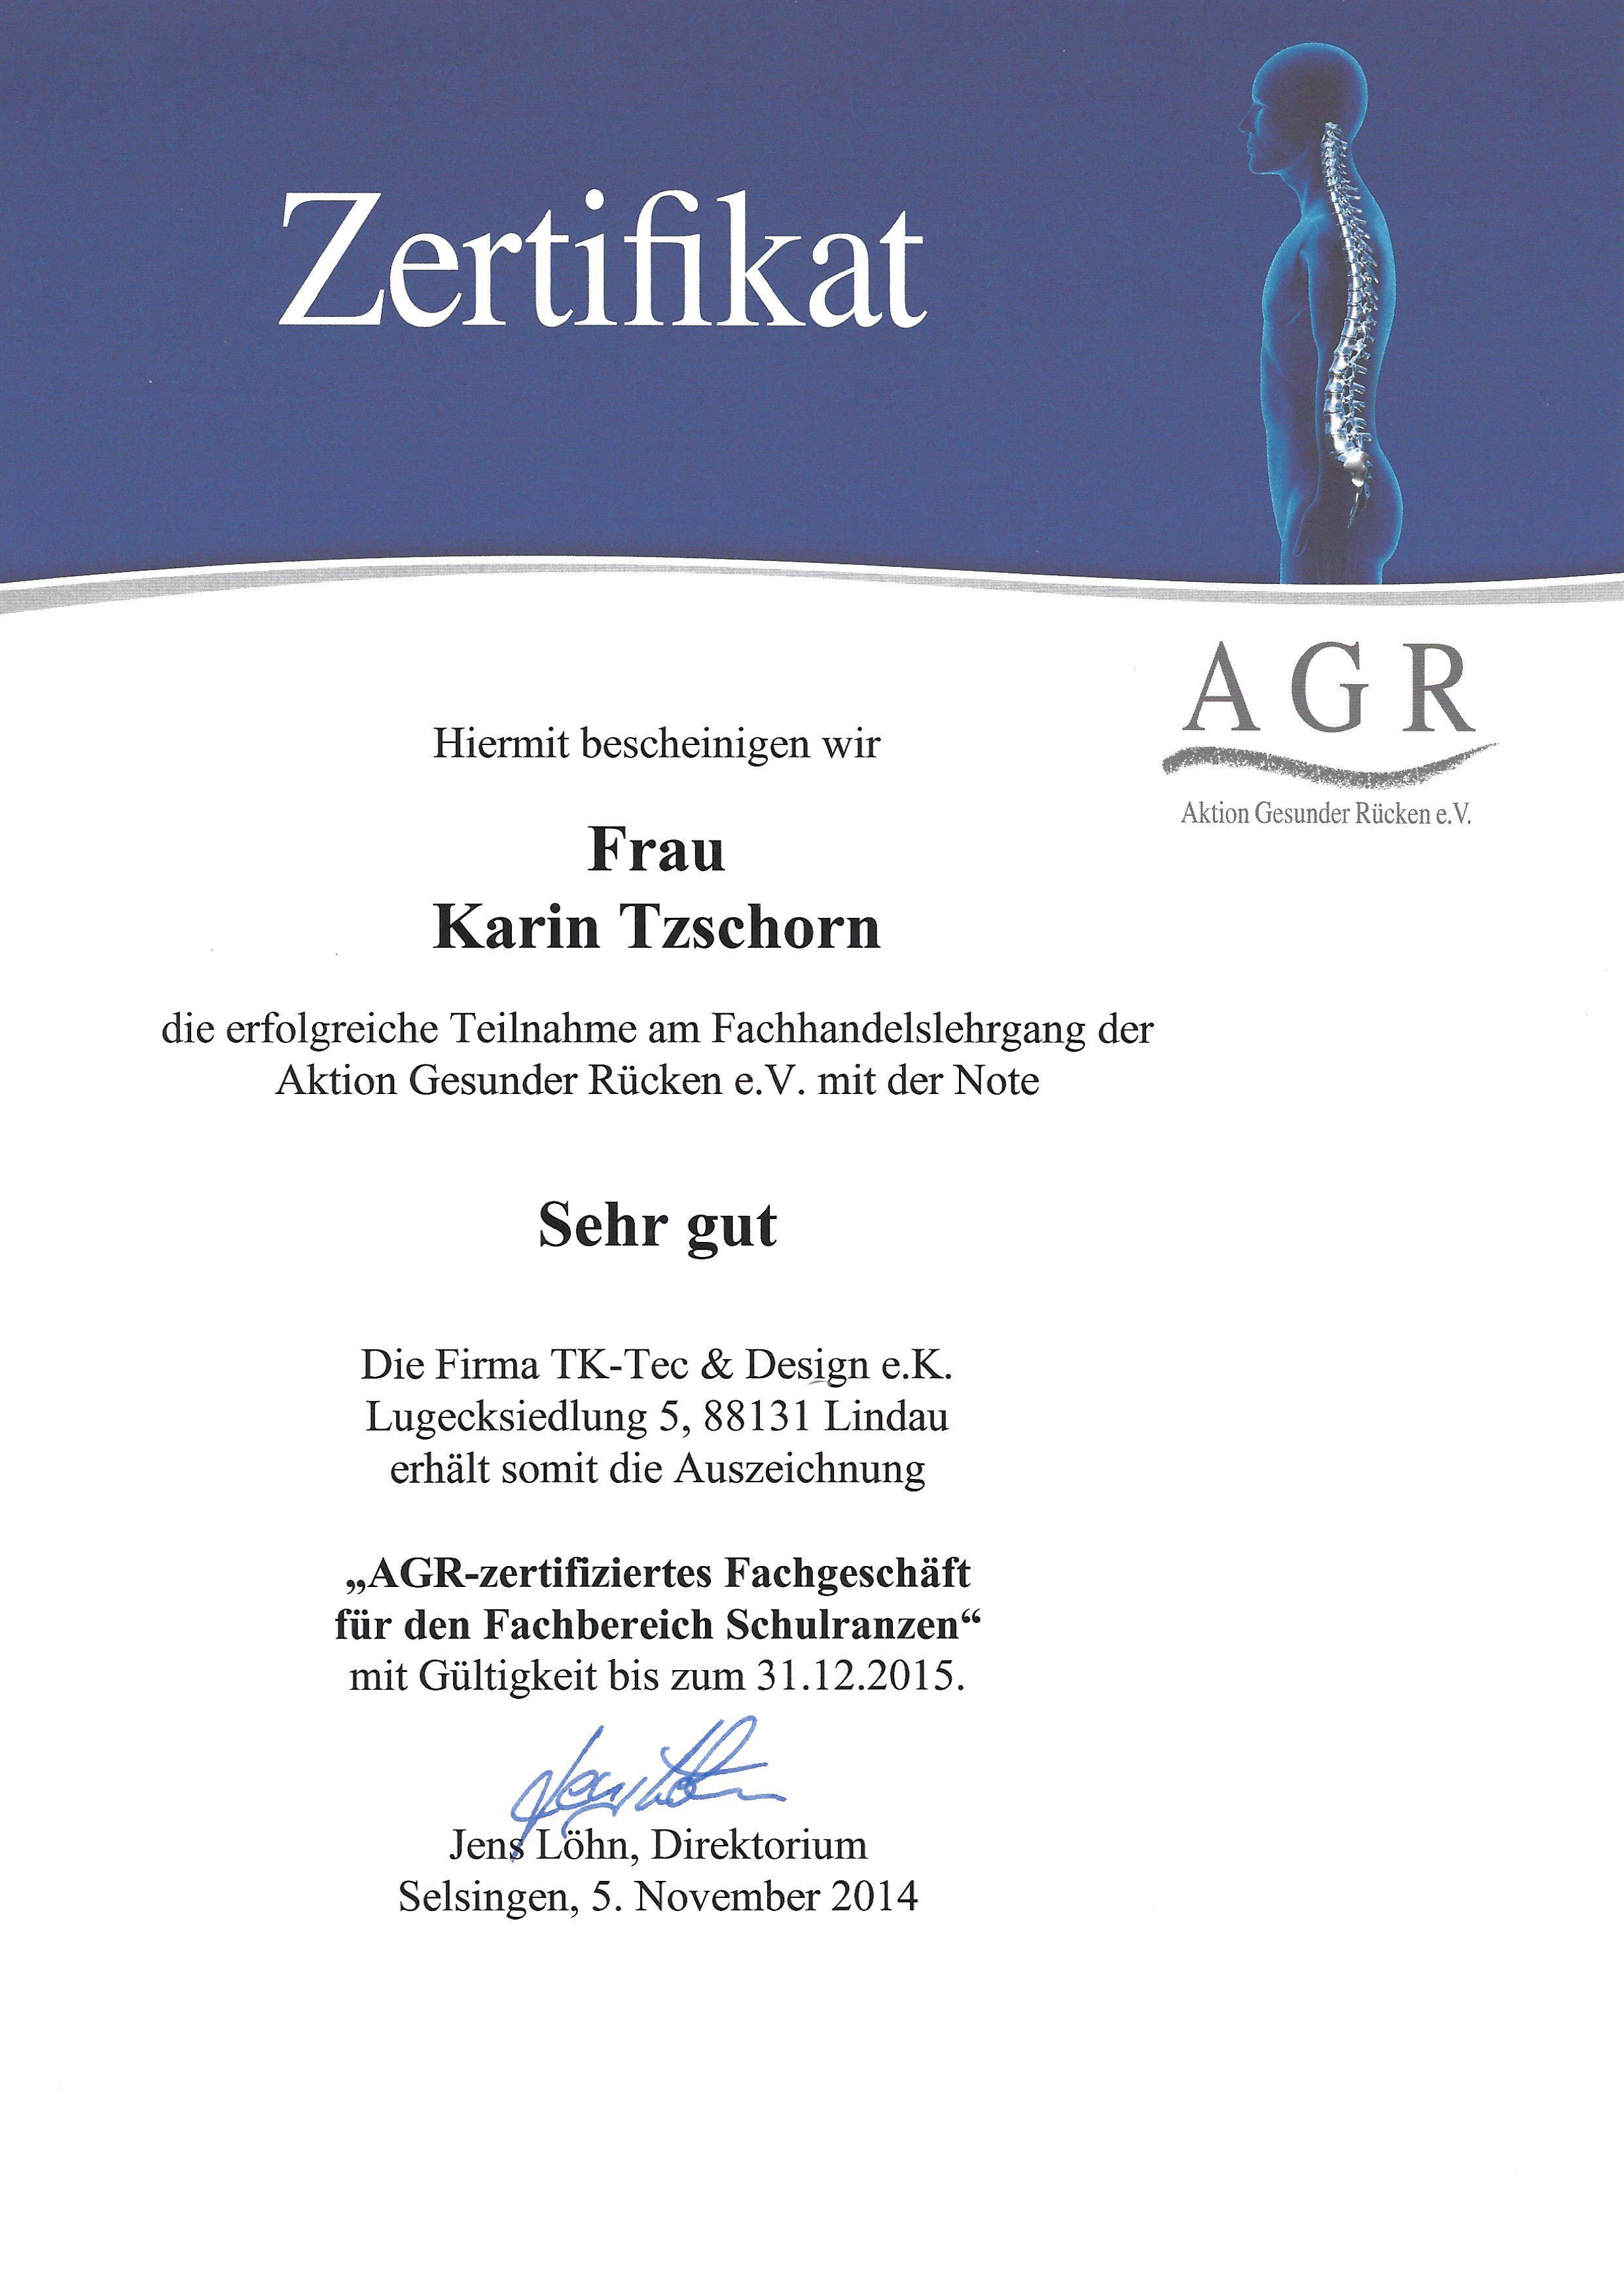 AGR-Zertifikat_2014